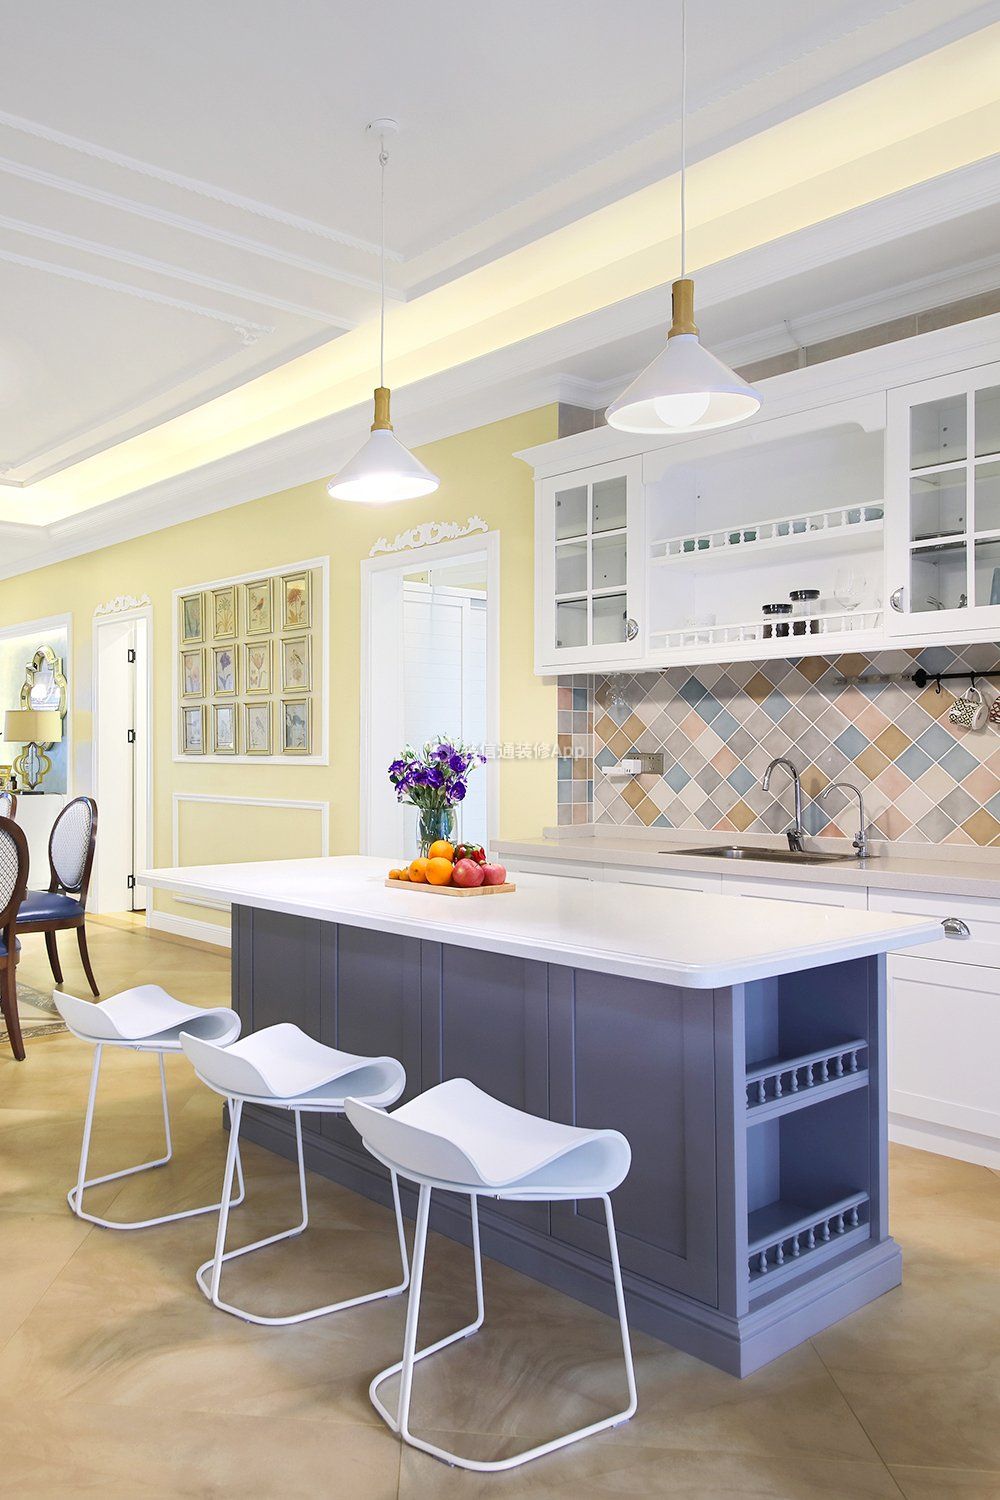 美式新房装修开放式厨房中岛设计图片